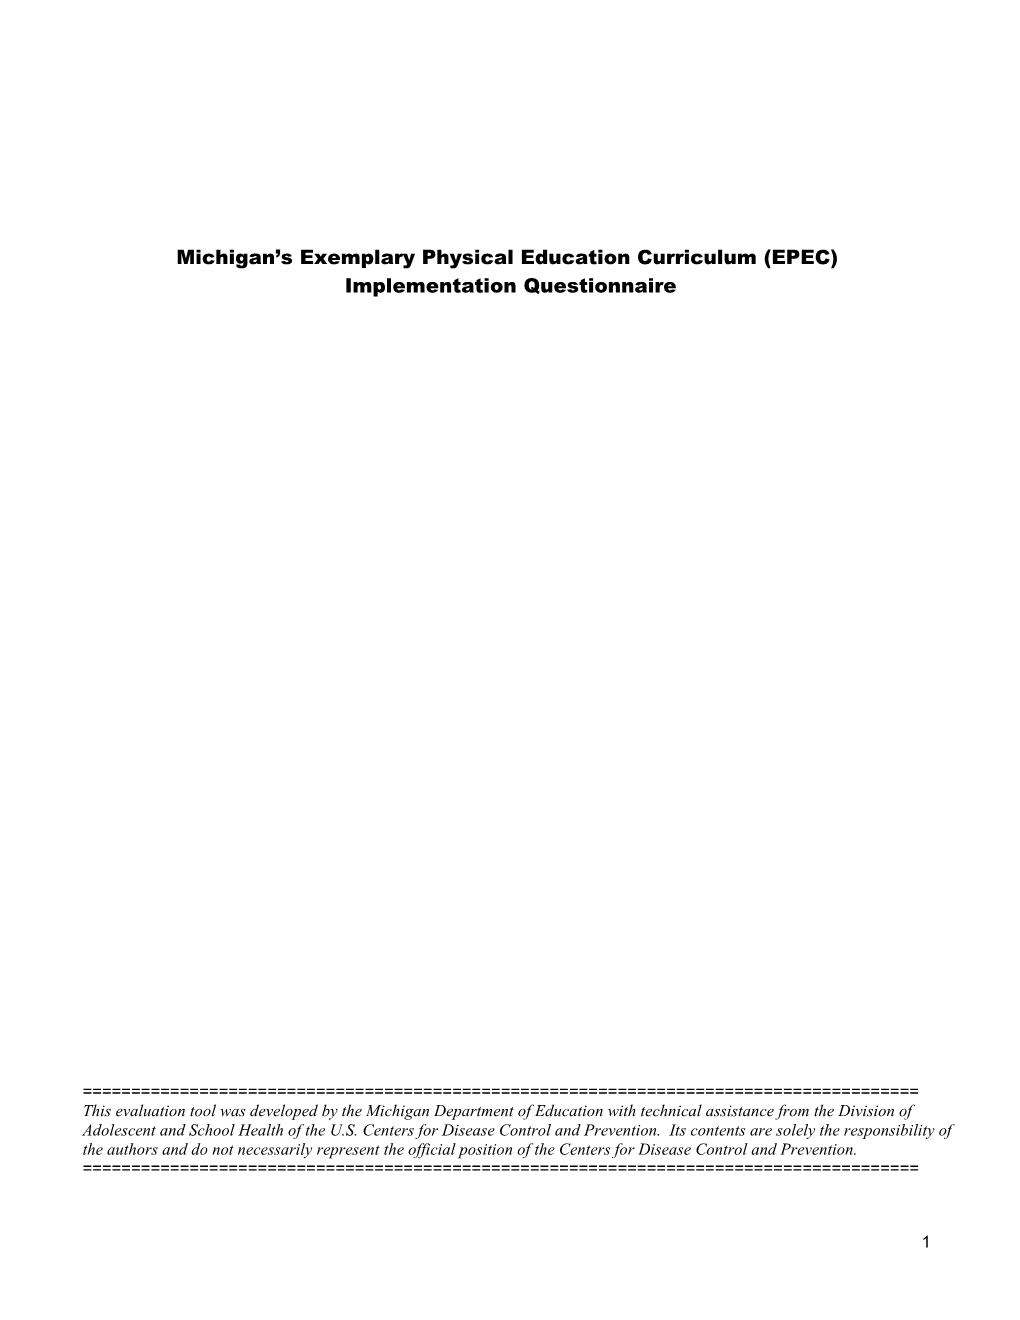 MI-EPEC Implementation Questionnaire